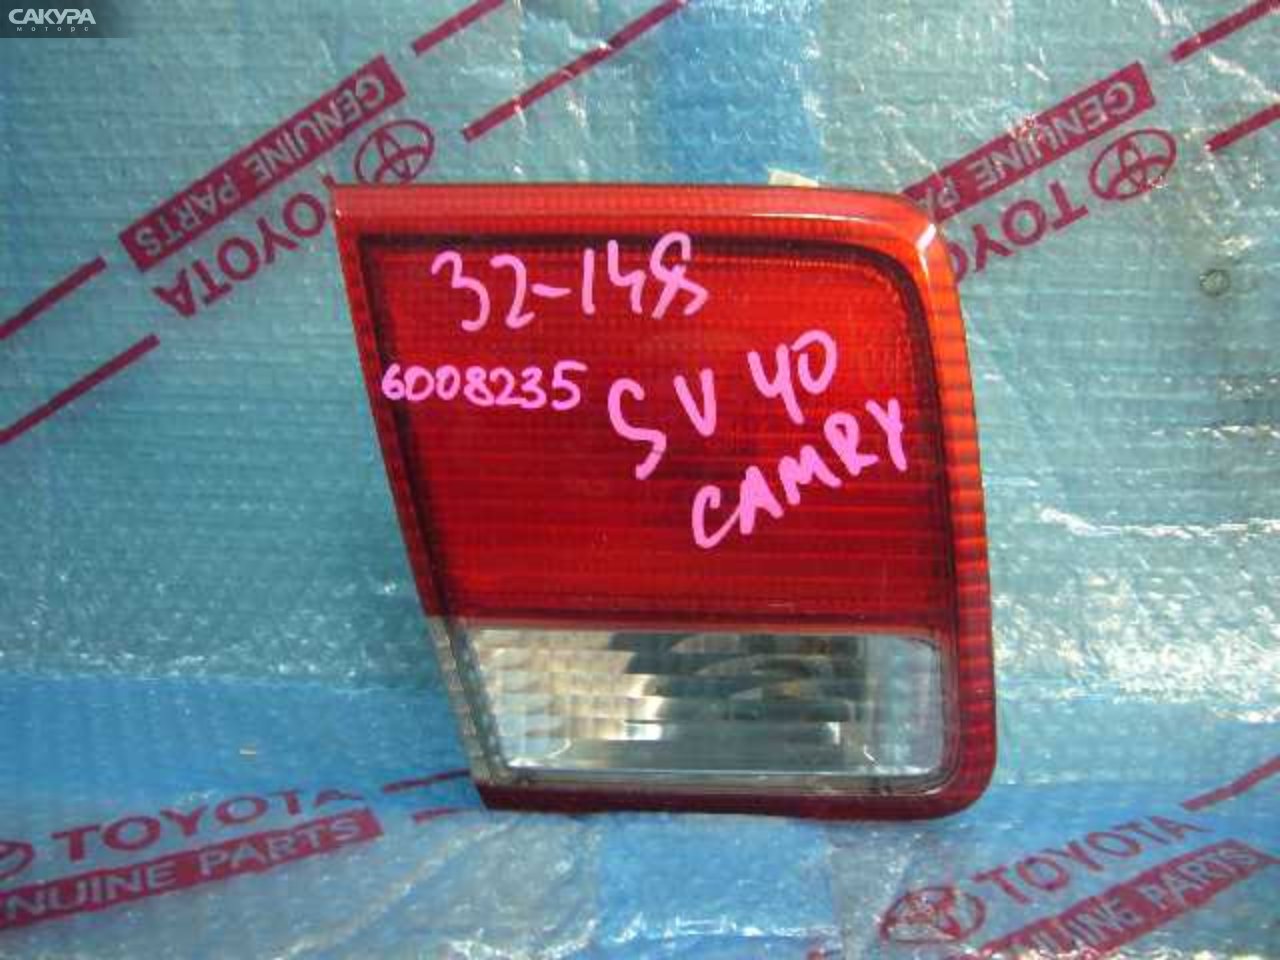 Фонарь вставка багажника левый Toyota Camry SV40 4S-FE 32-148: купить в Сакура Кемерово.